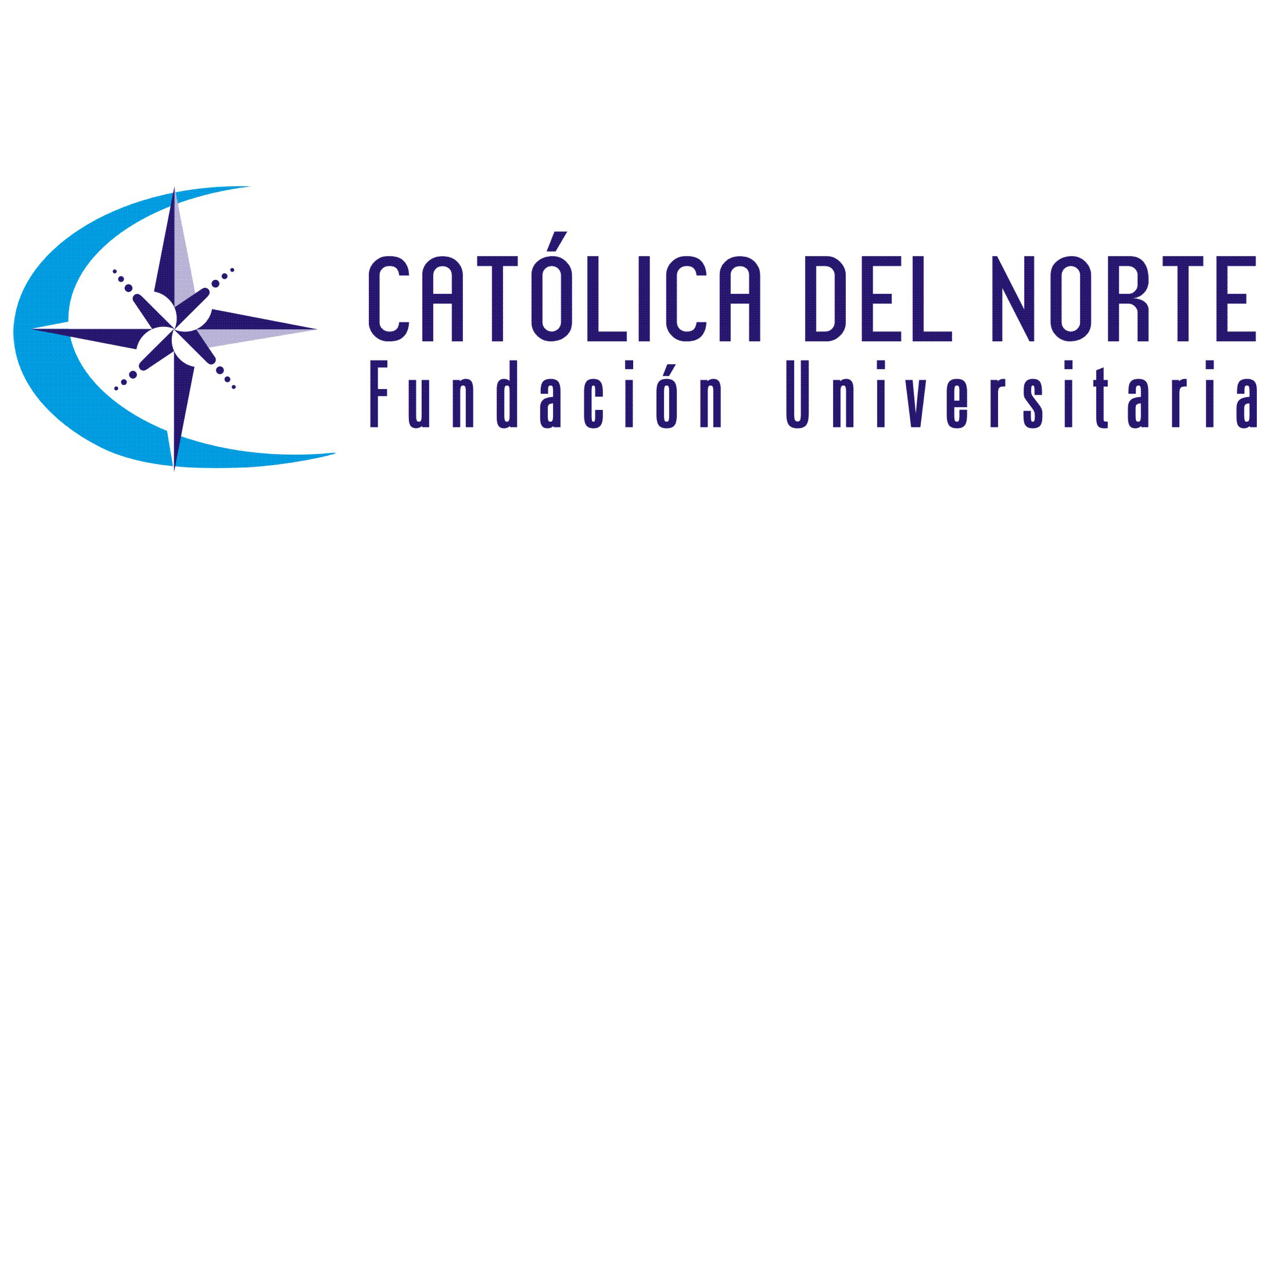 Gestión de proyectos educativos, tecnológicos, sociales y culturales de la Fundación Universitaria Católica del Norte